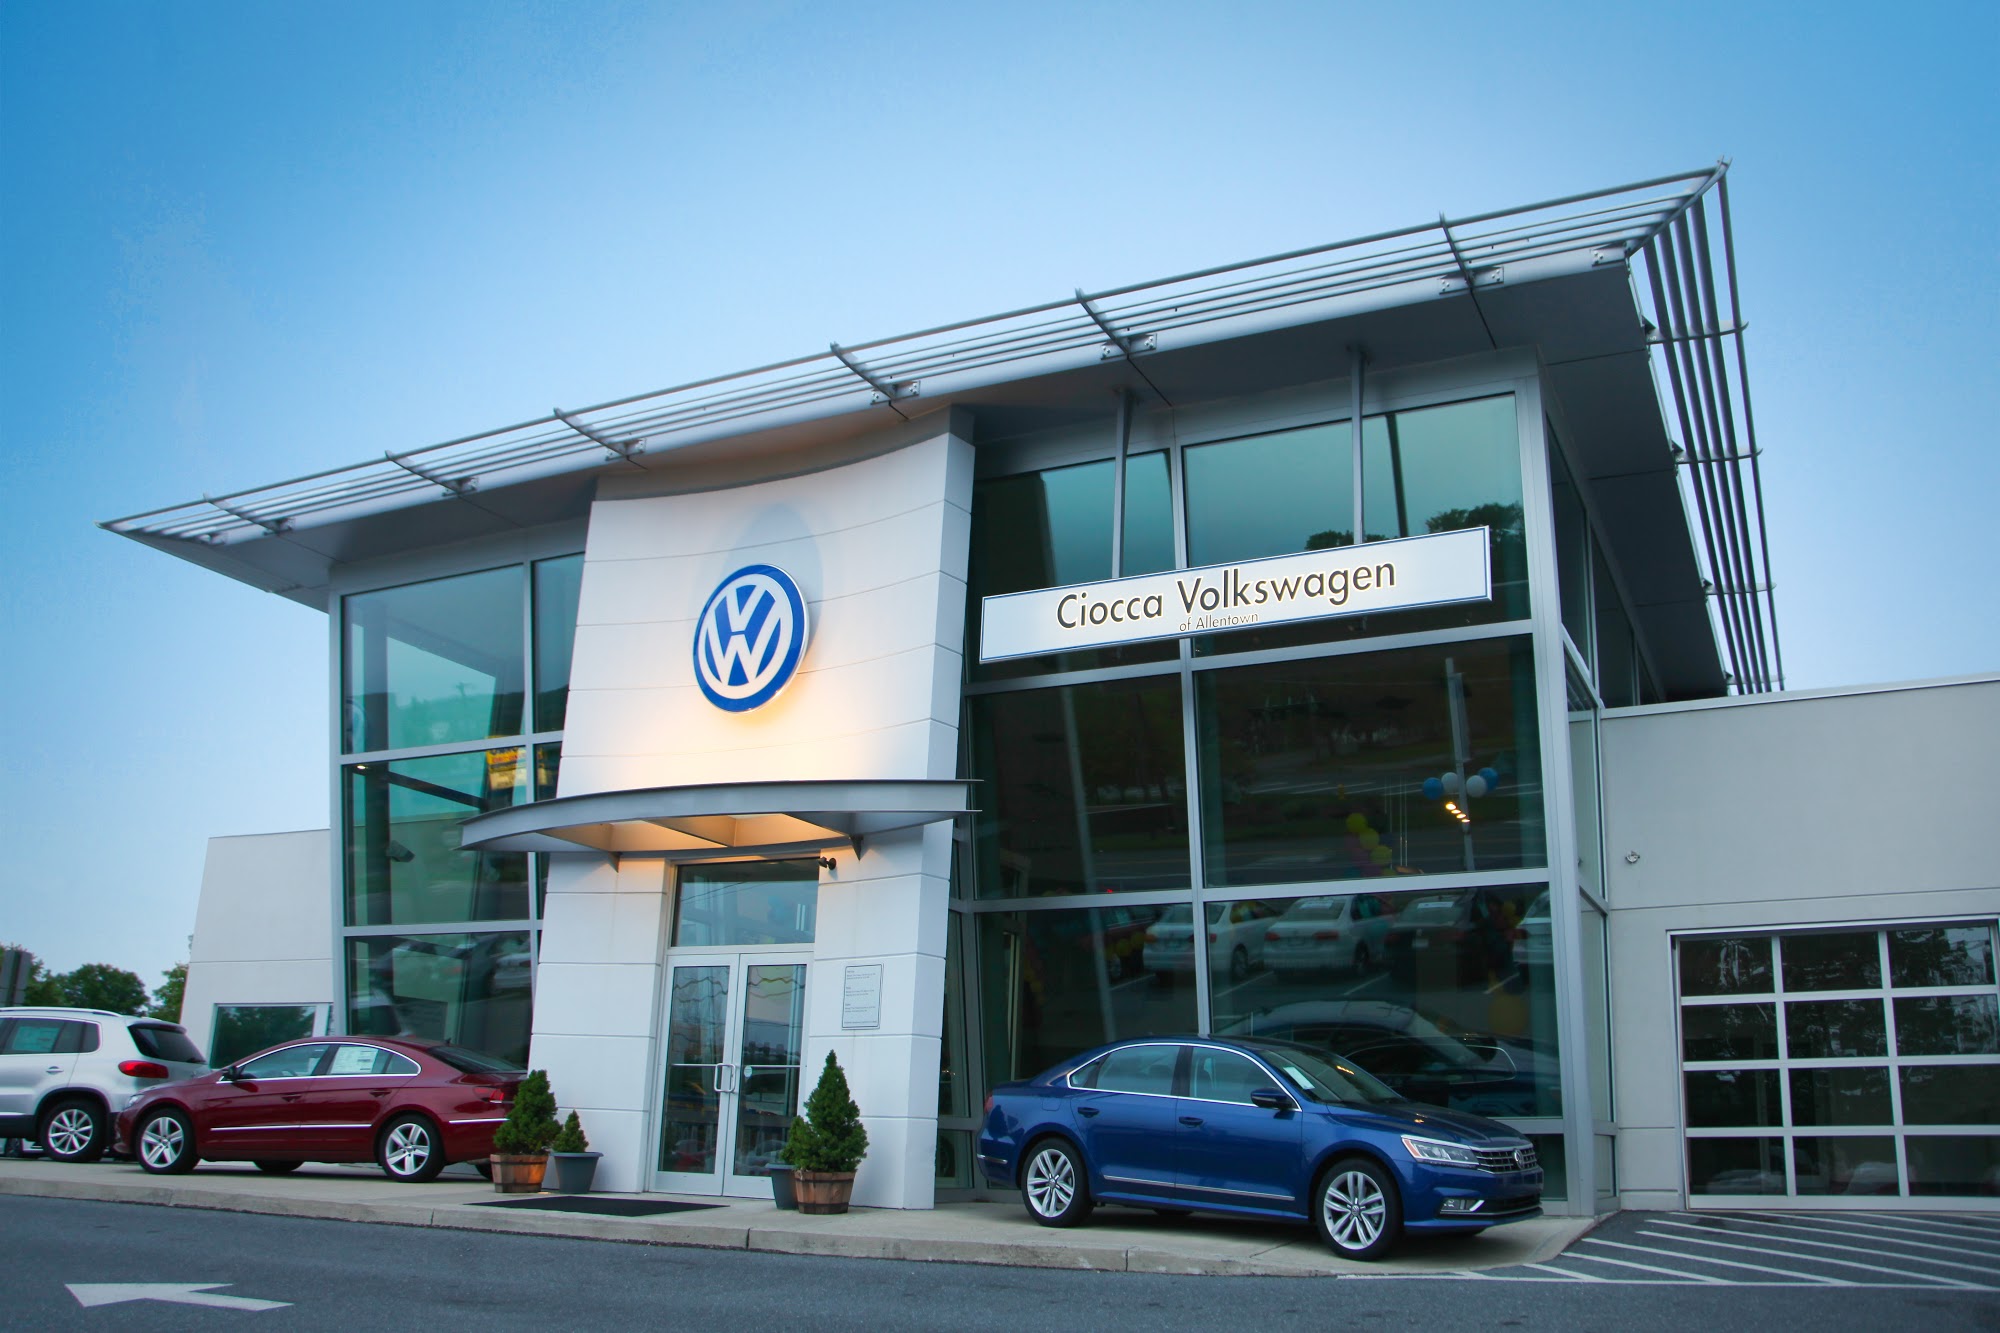 Ciocca Volkswagen of Allentown